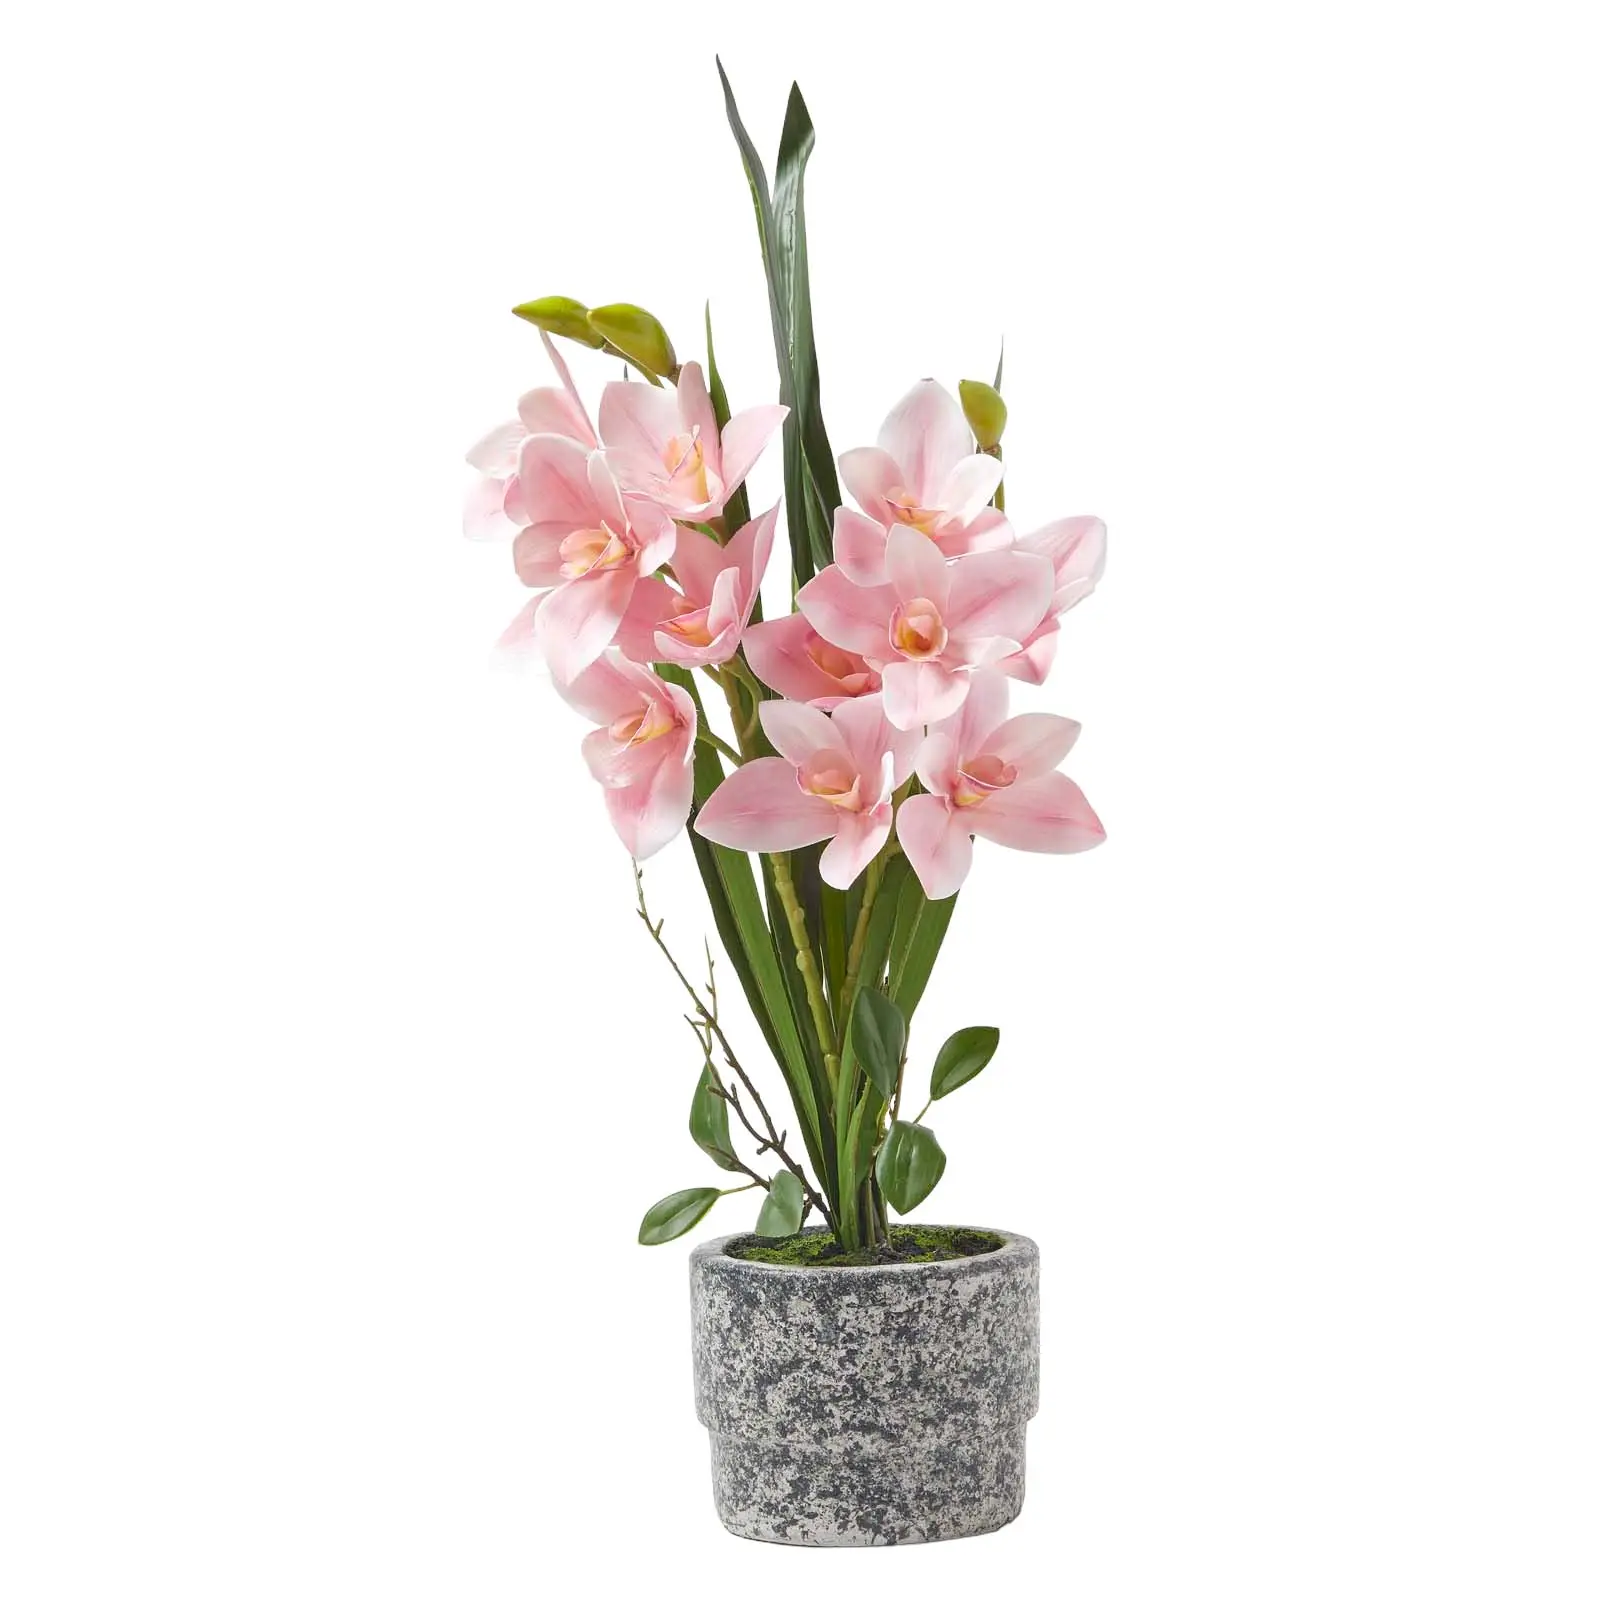 K眉nstliche Orchidee im Zement-Topf 58 cm